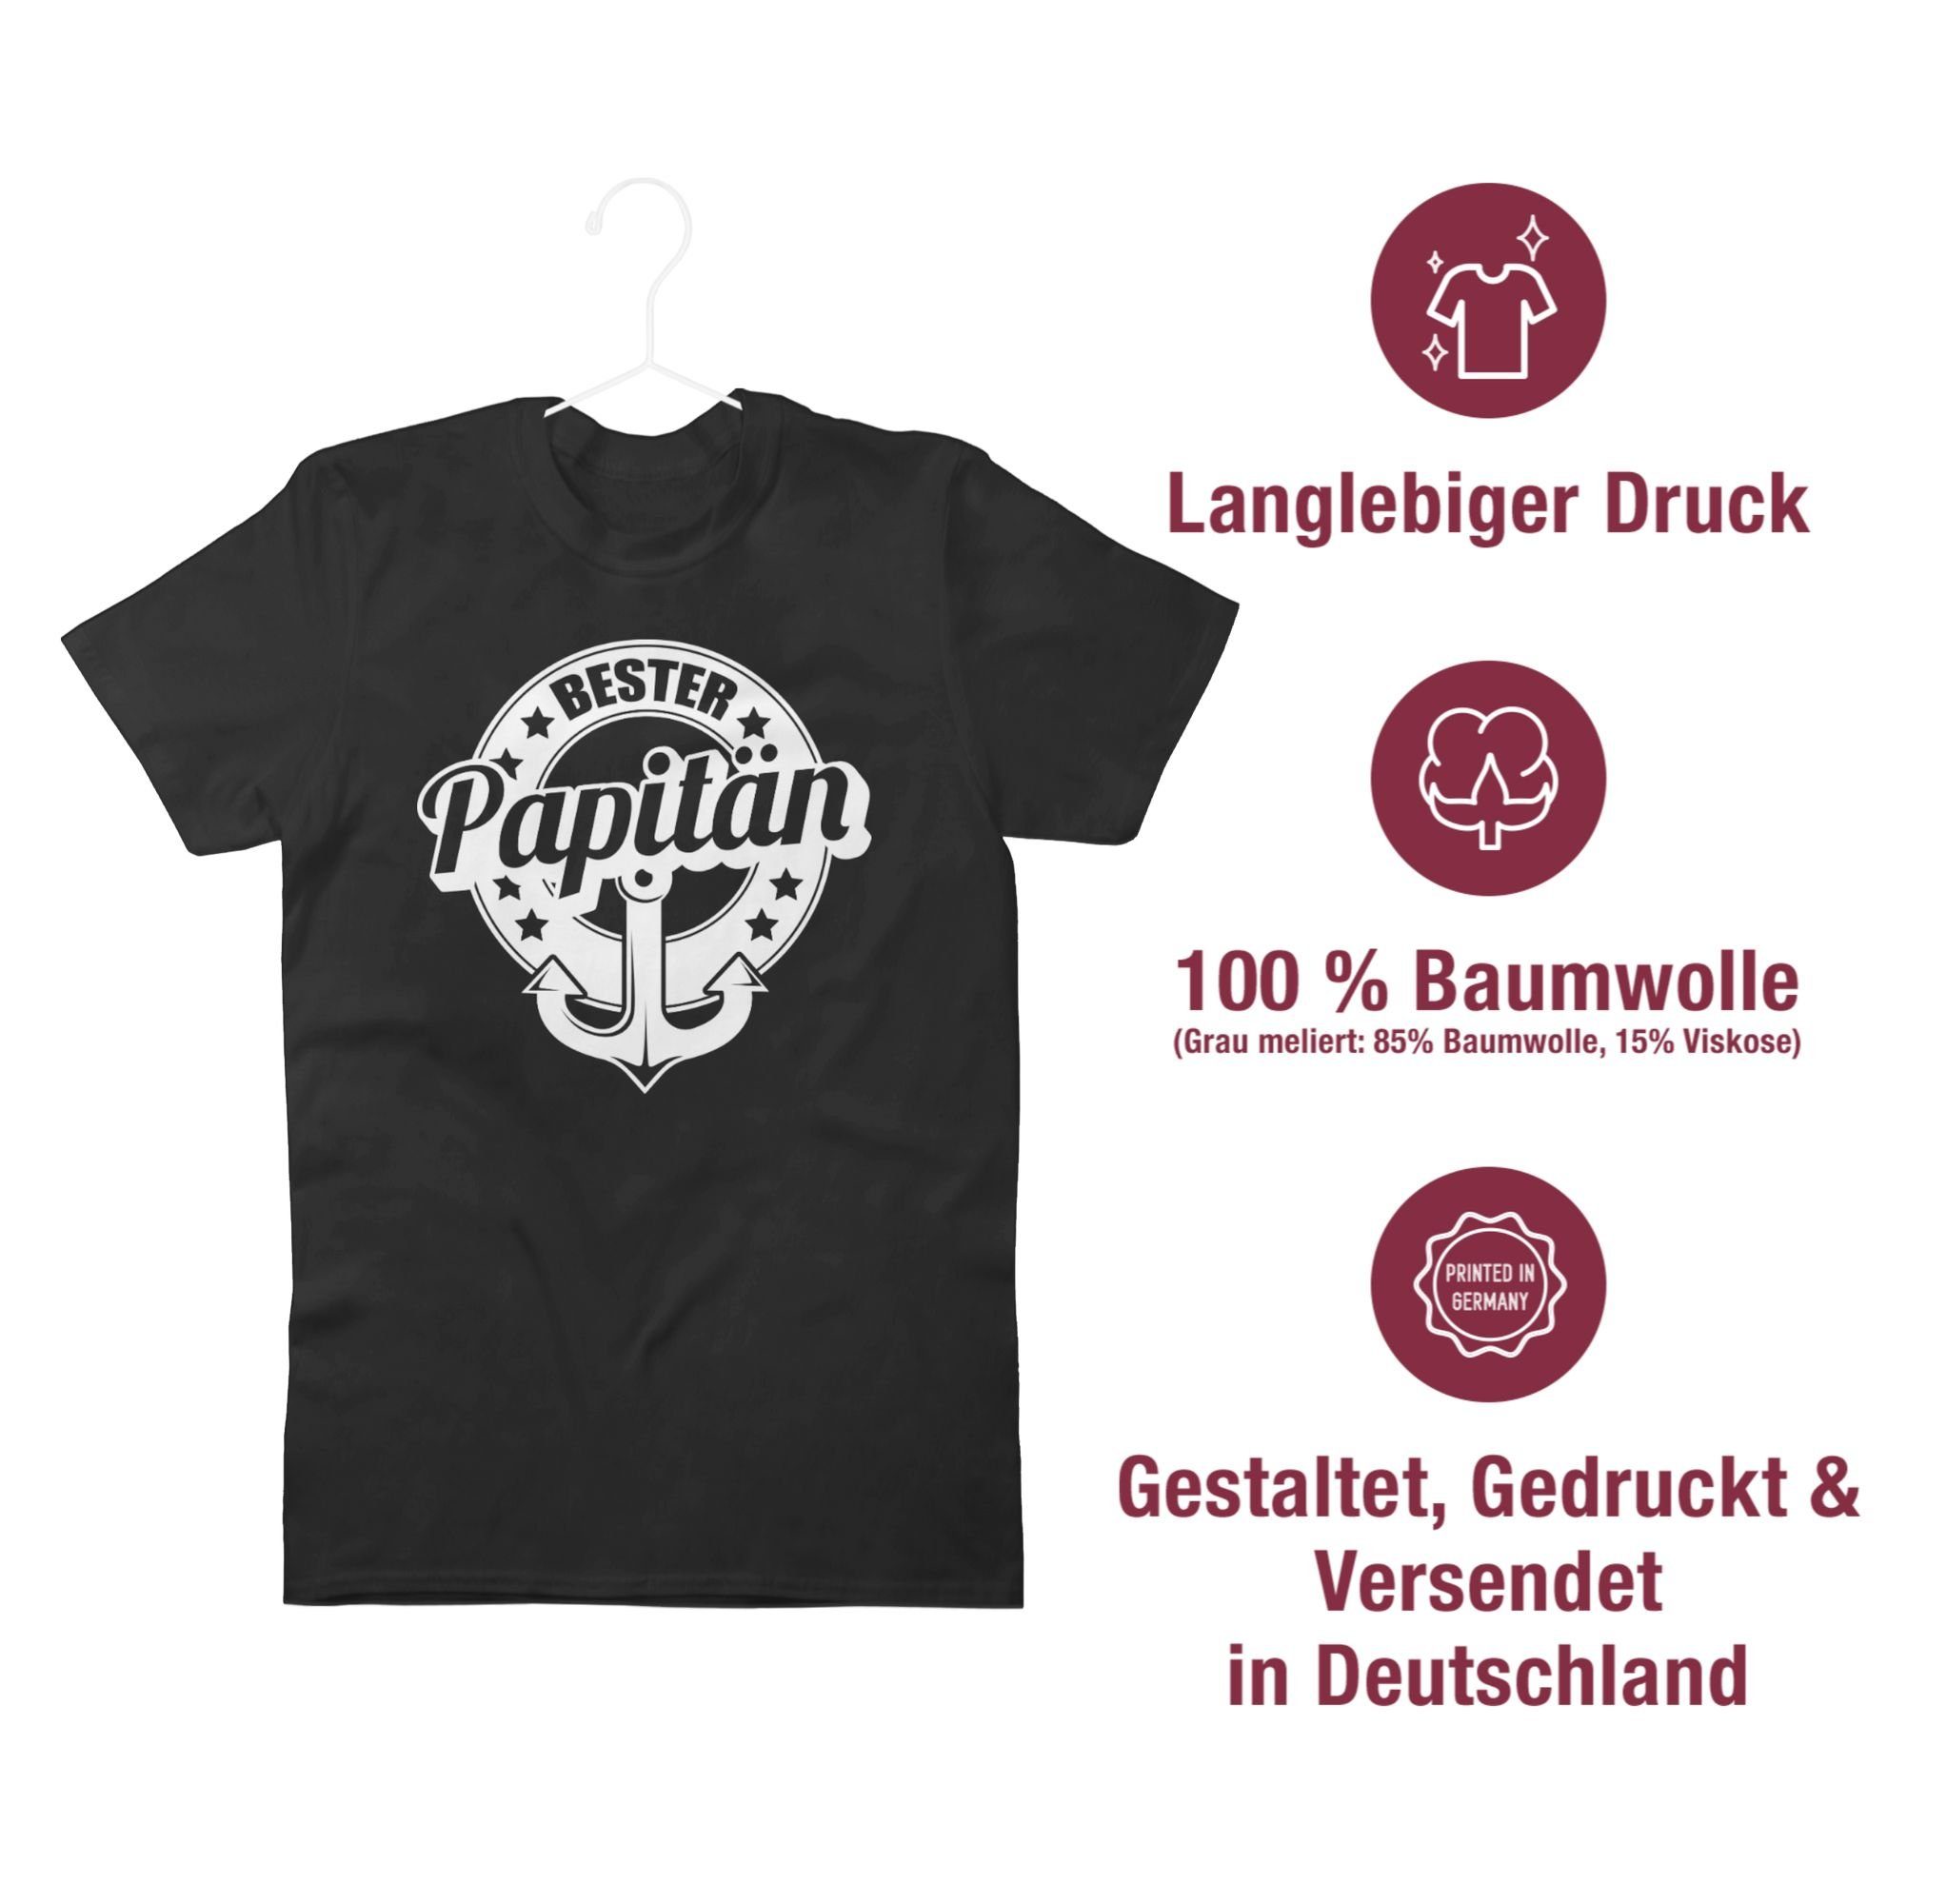 T-Shirt Papitän Papa Shirtracer 2 Geschenk für Vatertag Bester Schwarz